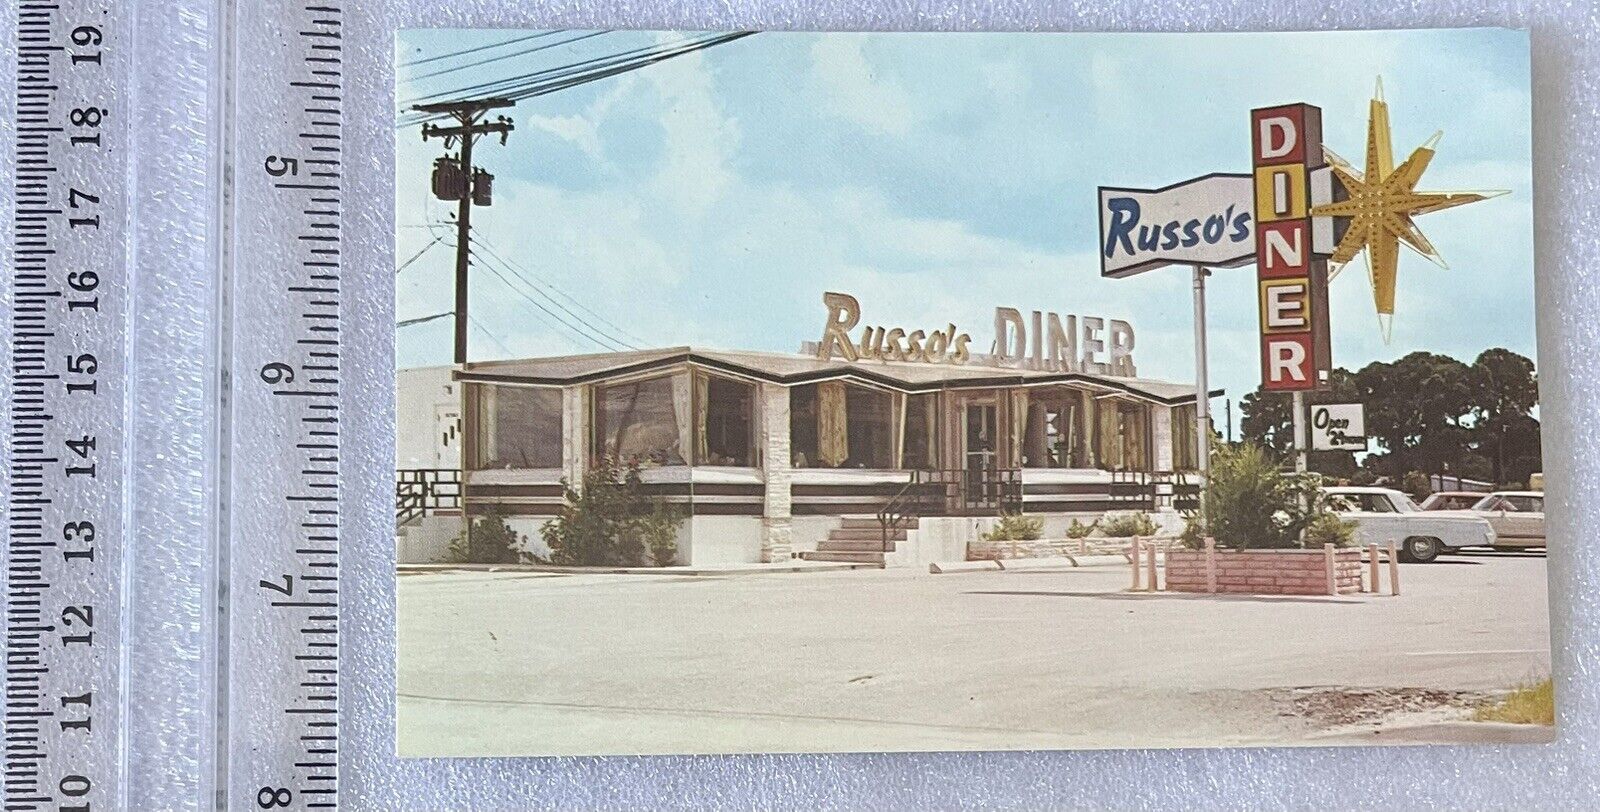 FL 1960’s FLORIDA ROADSIDE Russo’s Diner Restaurant in Sarasota, FLA - Cool Sign